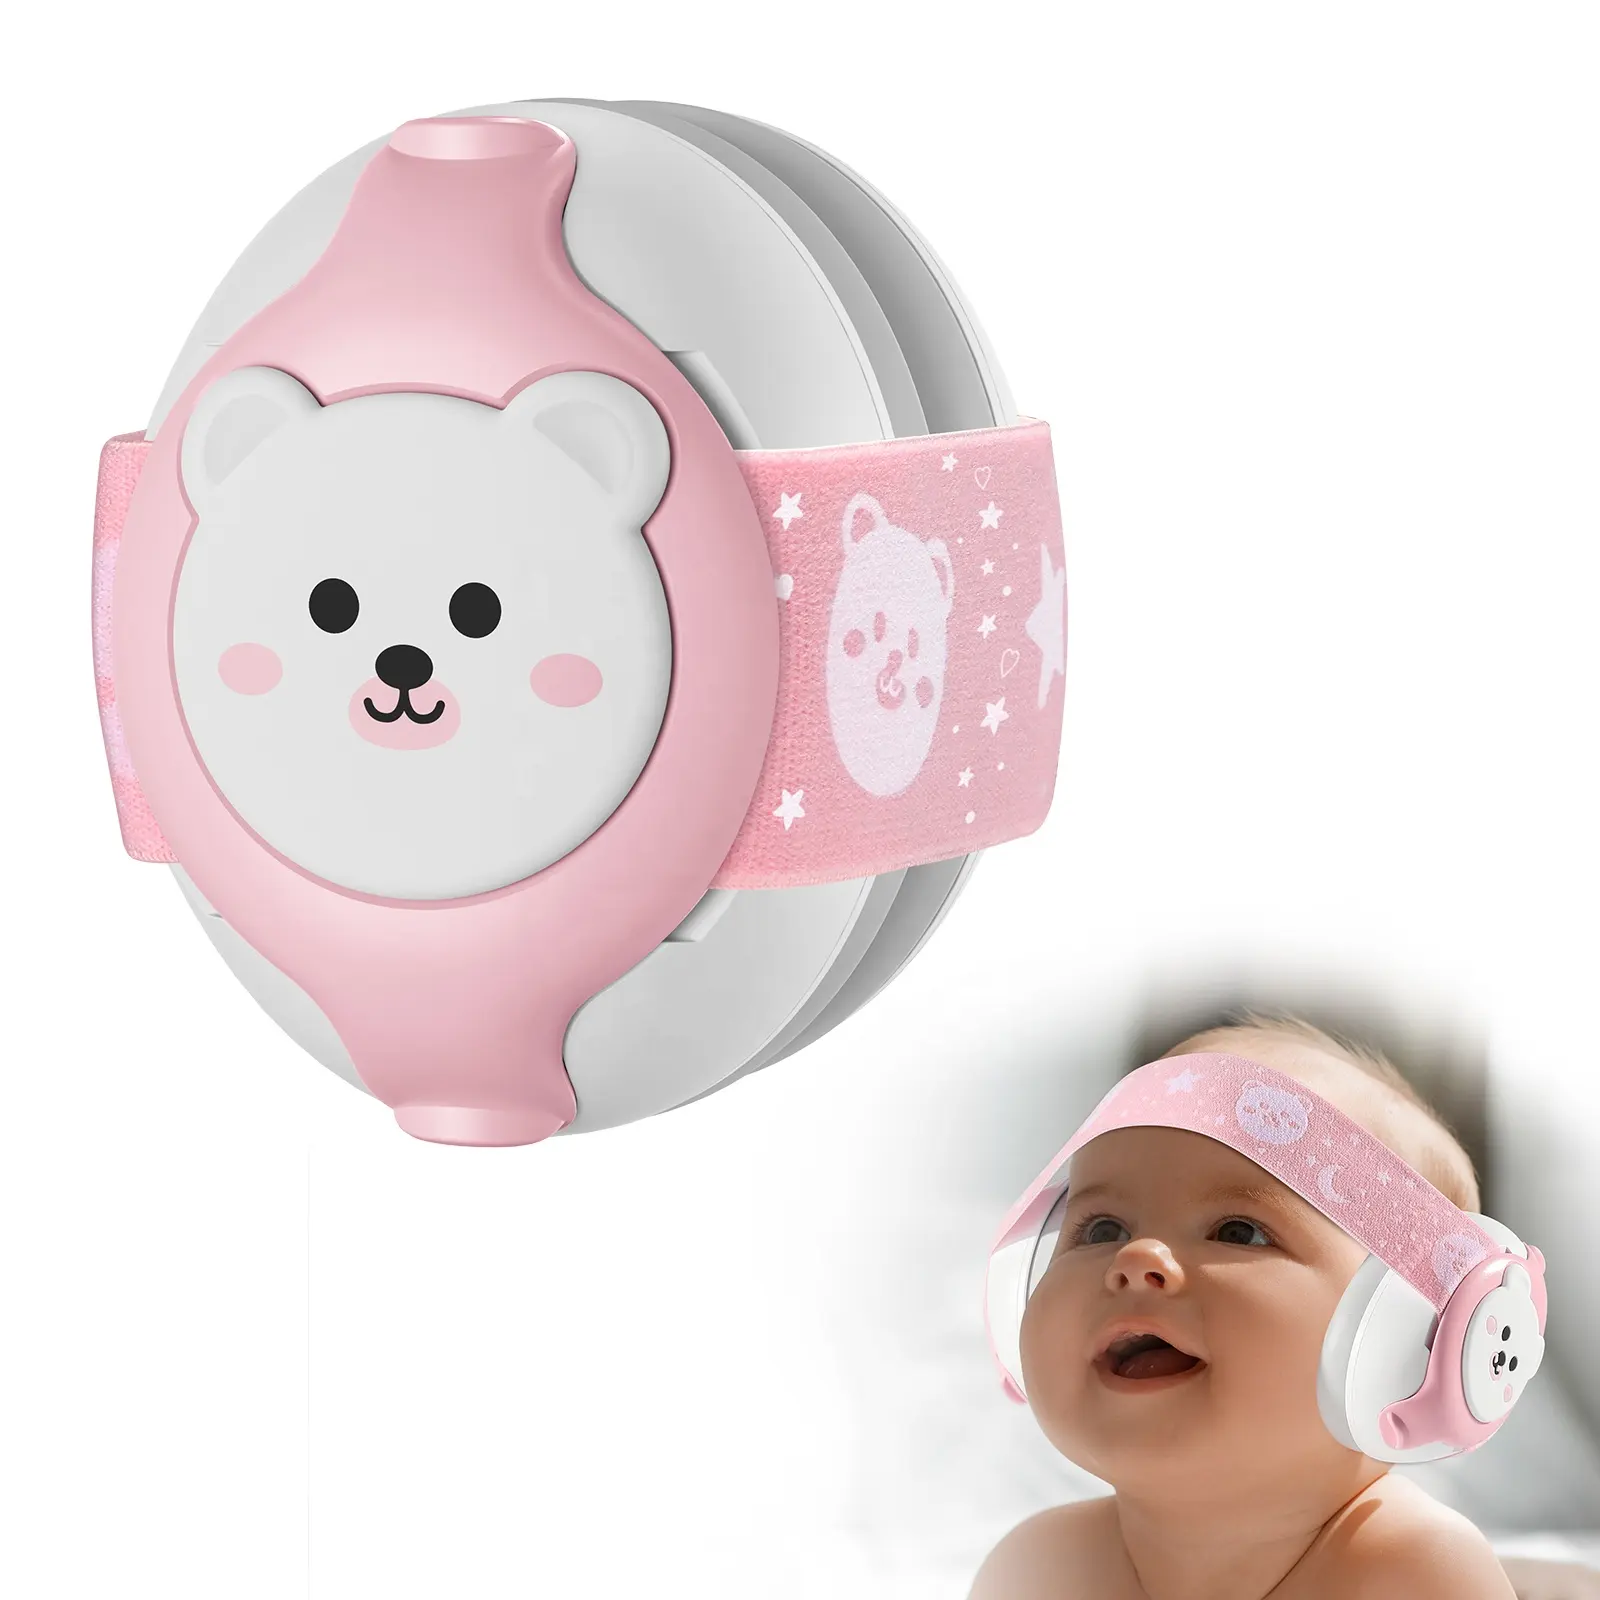 تصميم جديد لطيف للأذن طفل رضيع عصابة رأس لحماية السمع للأذن الطفل صيحات إلغاء الضوضاء للنوم